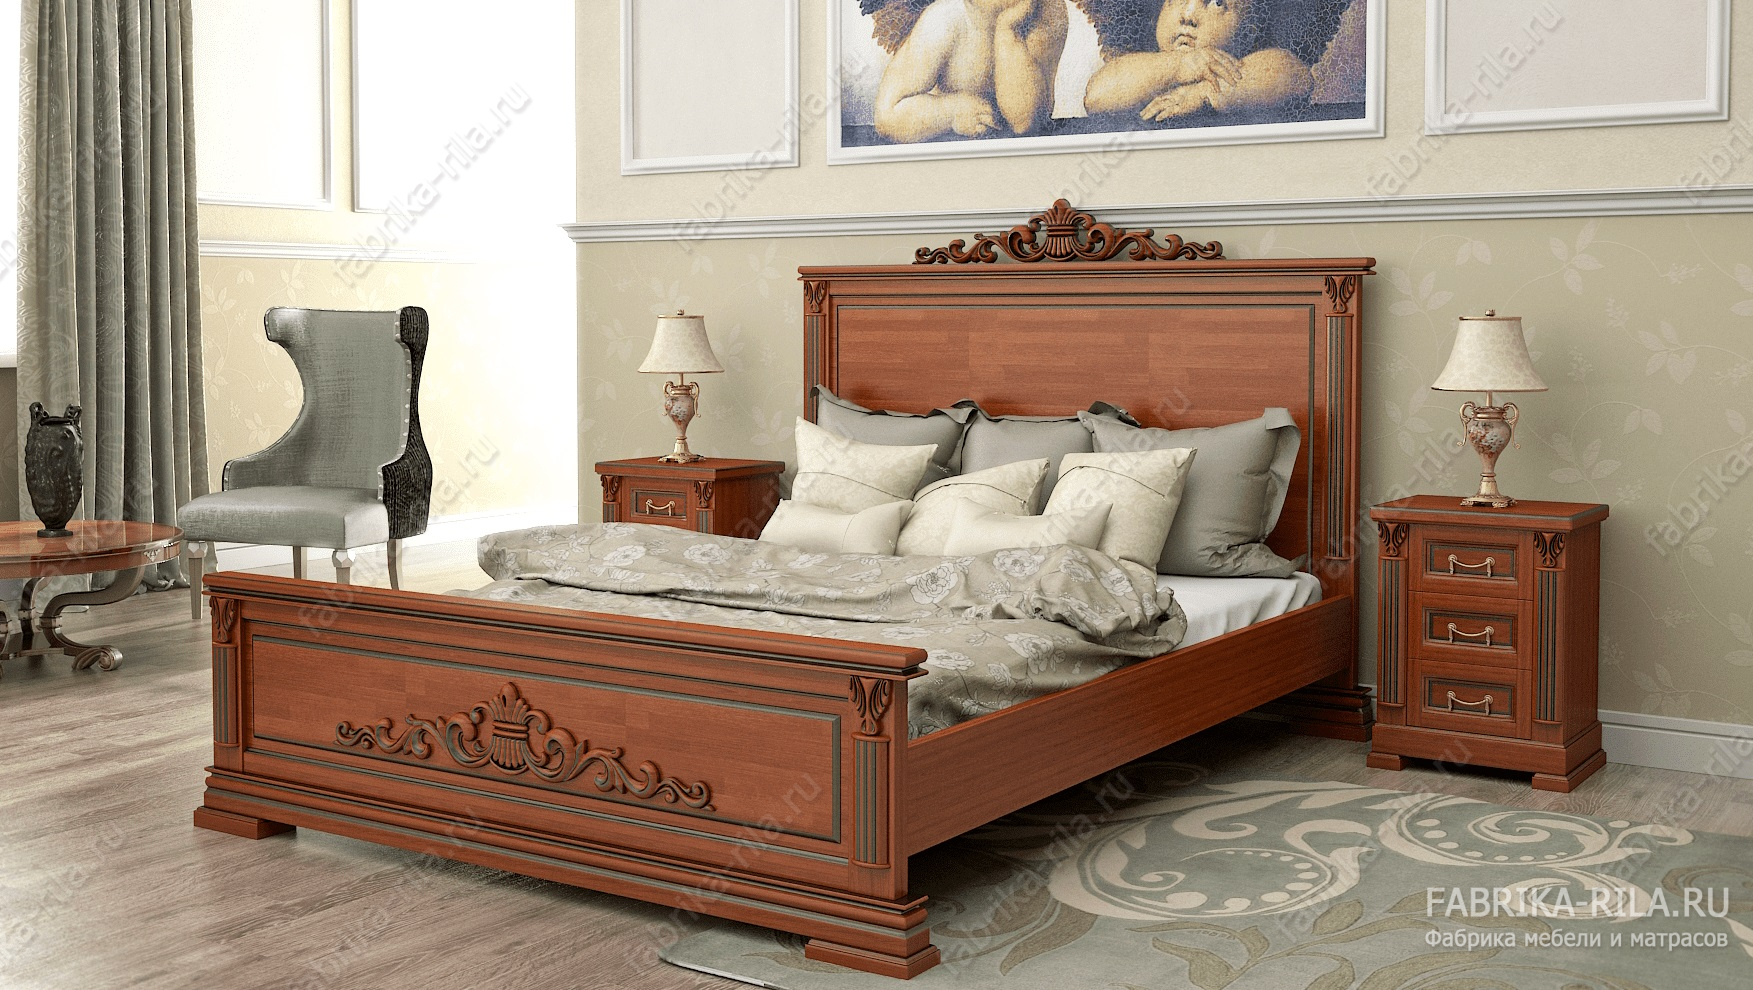 Кровать Viktori 1 — 120x190 см. из сосны